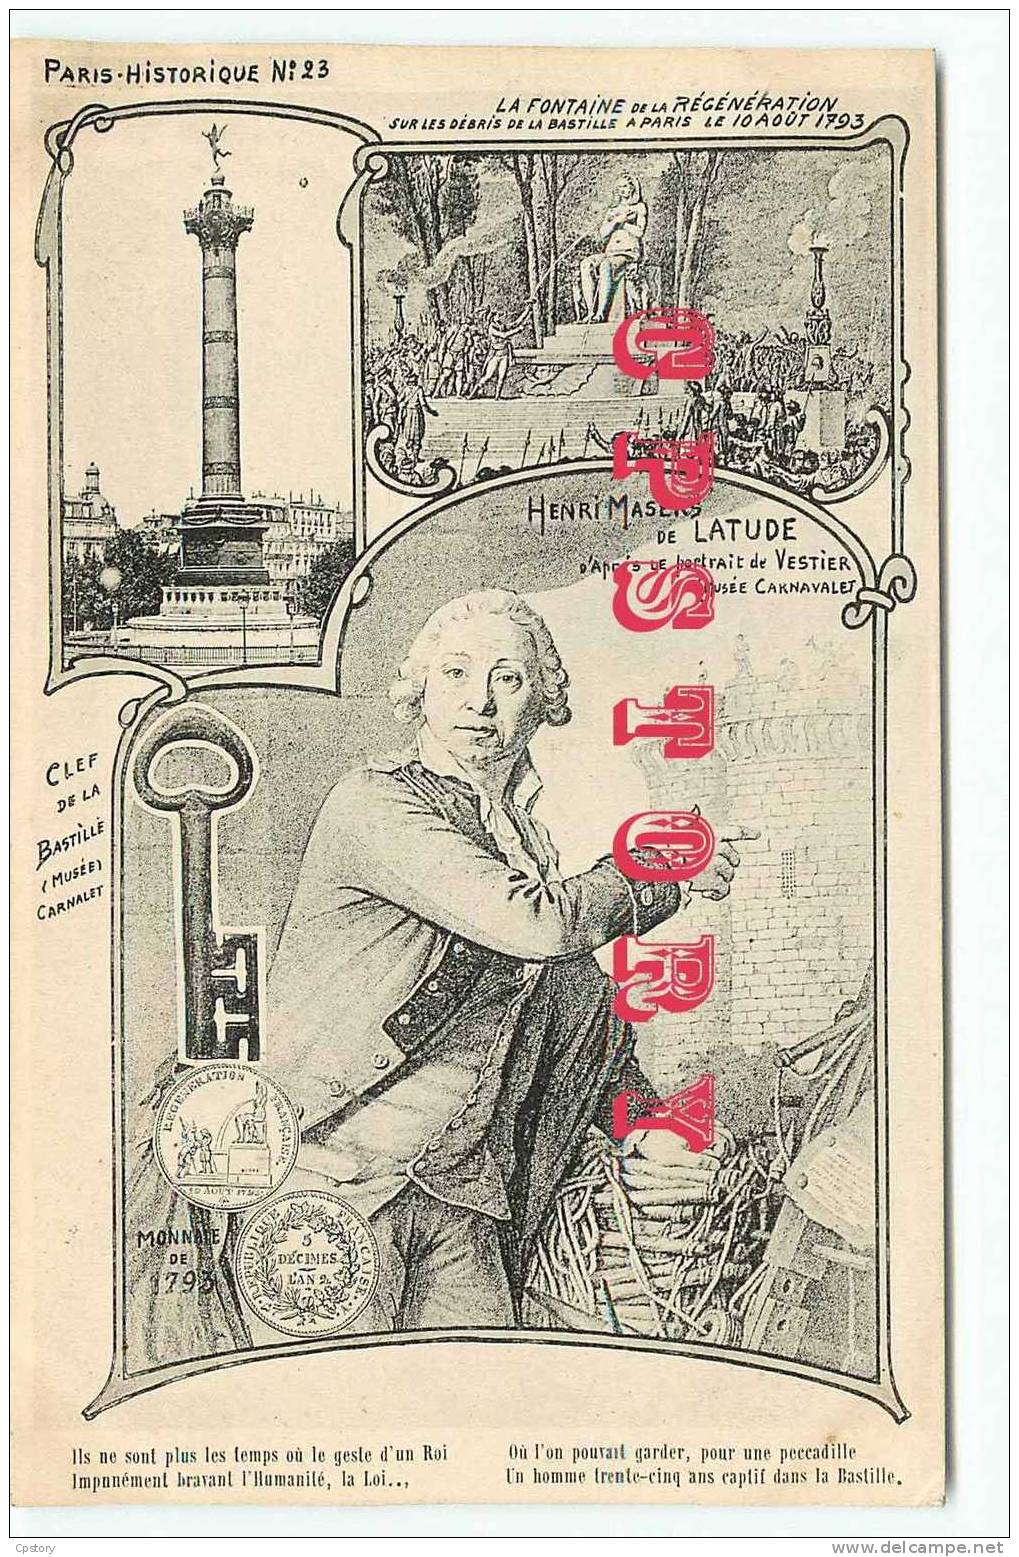 ORENS ? - PARIS HISTORIQUE N° 23 - Clef De La Bastille Et Henri Masers Latude - Monnaie De 1793 - RARE - Dos Scané - Orens